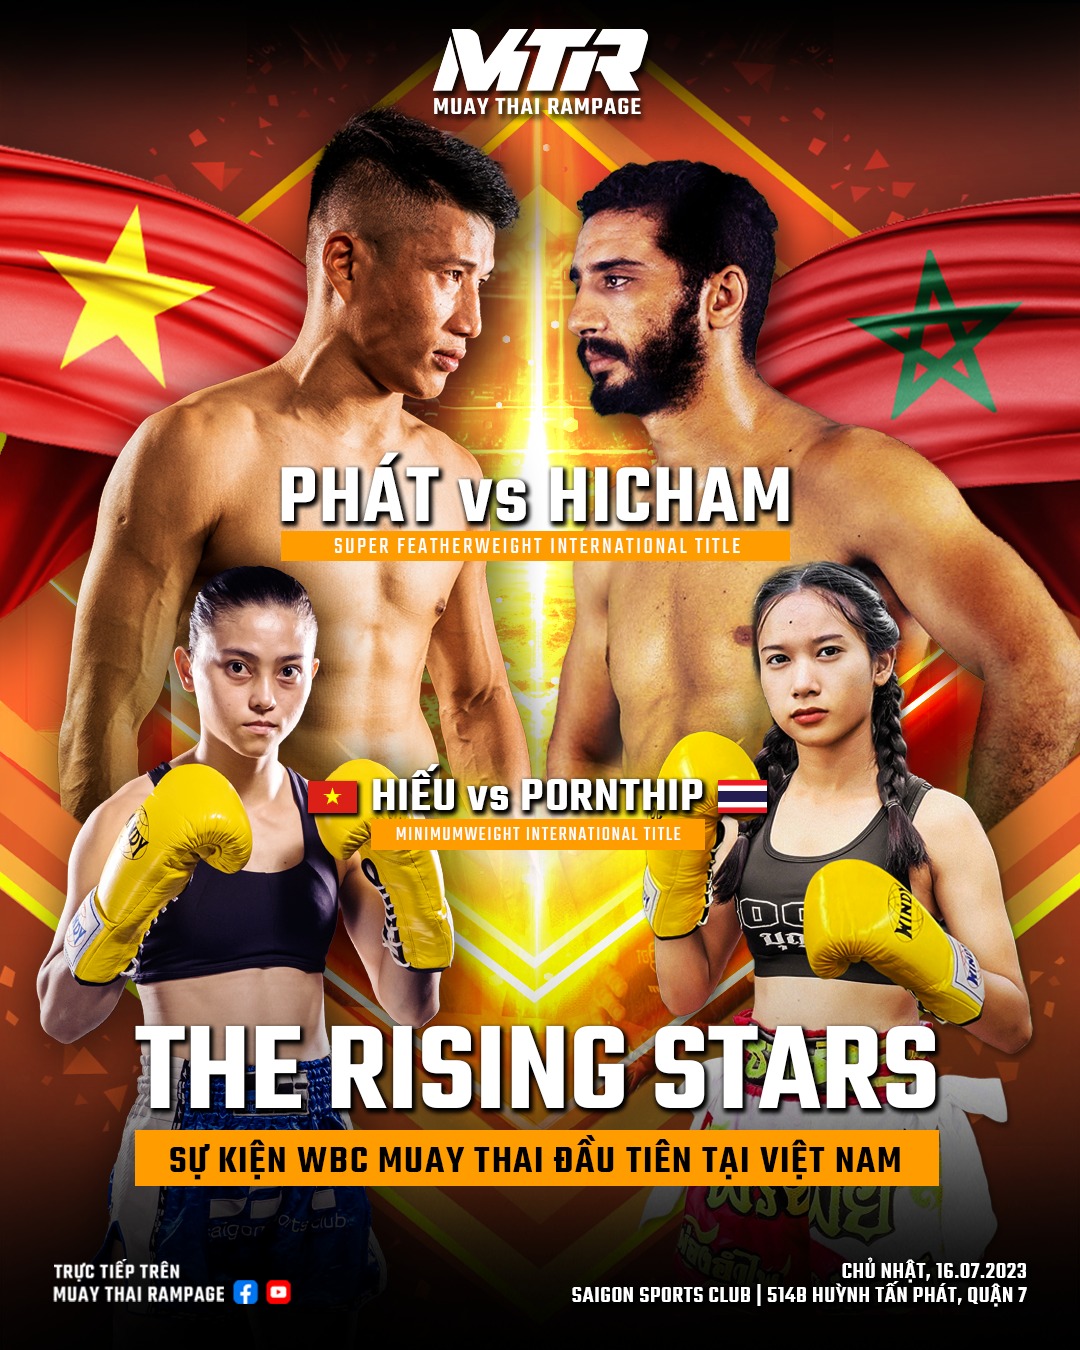 Minh Phát, Hữu Hiếu tranh đai WBC thế giới tại giải đấu Muay chuyên nghiệp MTR - Ảnh 3.